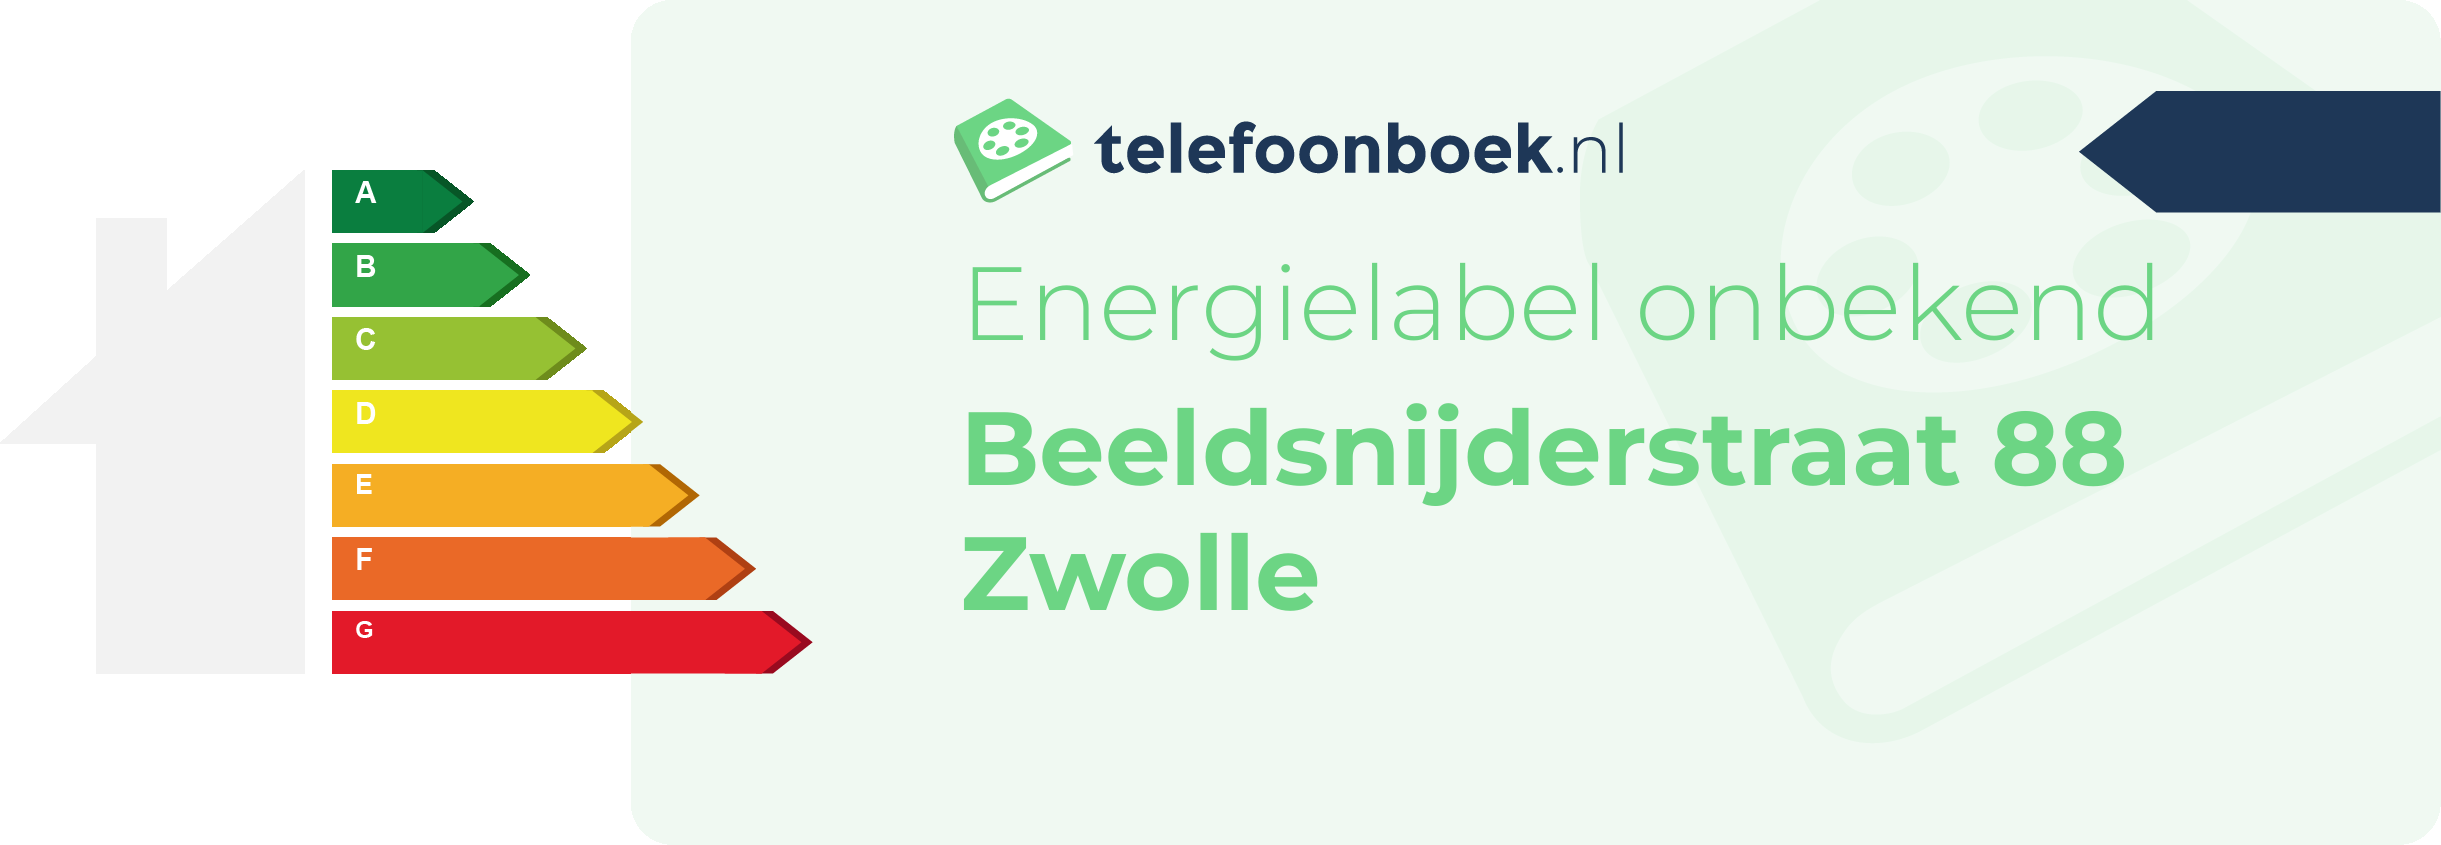 Energielabel Beeldsnijderstraat 88 Zwolle